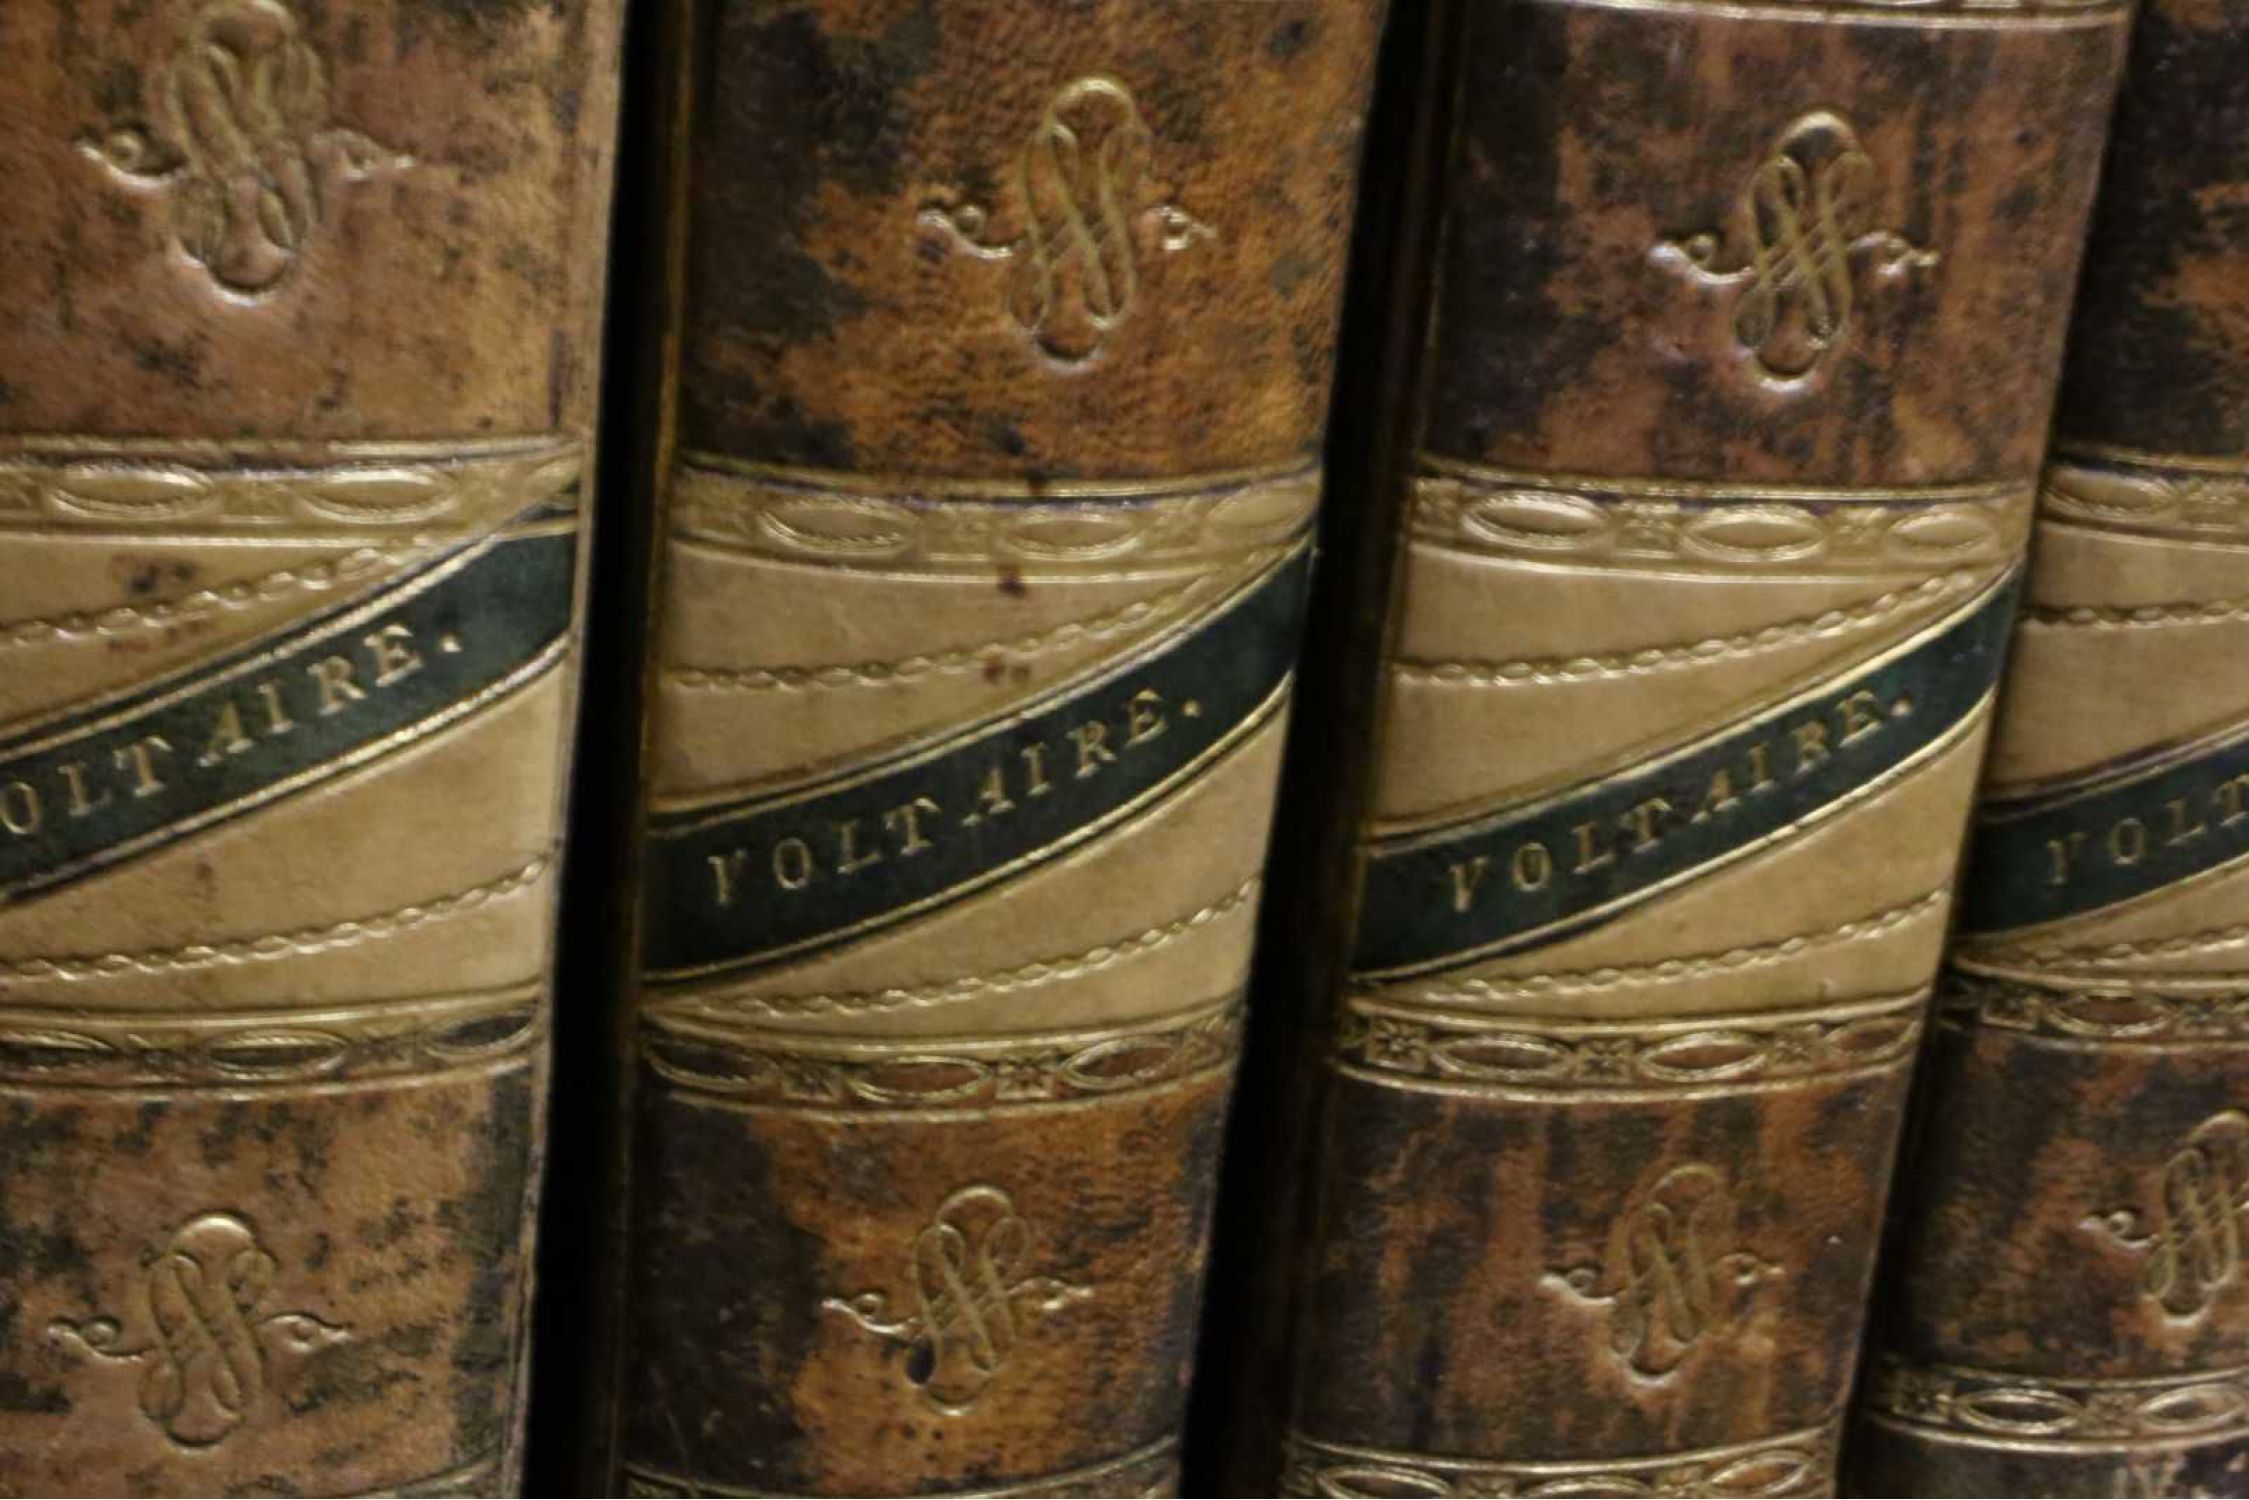 Œuvres de Voltaire Tome XIX: Siècle de Louis XIV.—Tome I by Voltaire